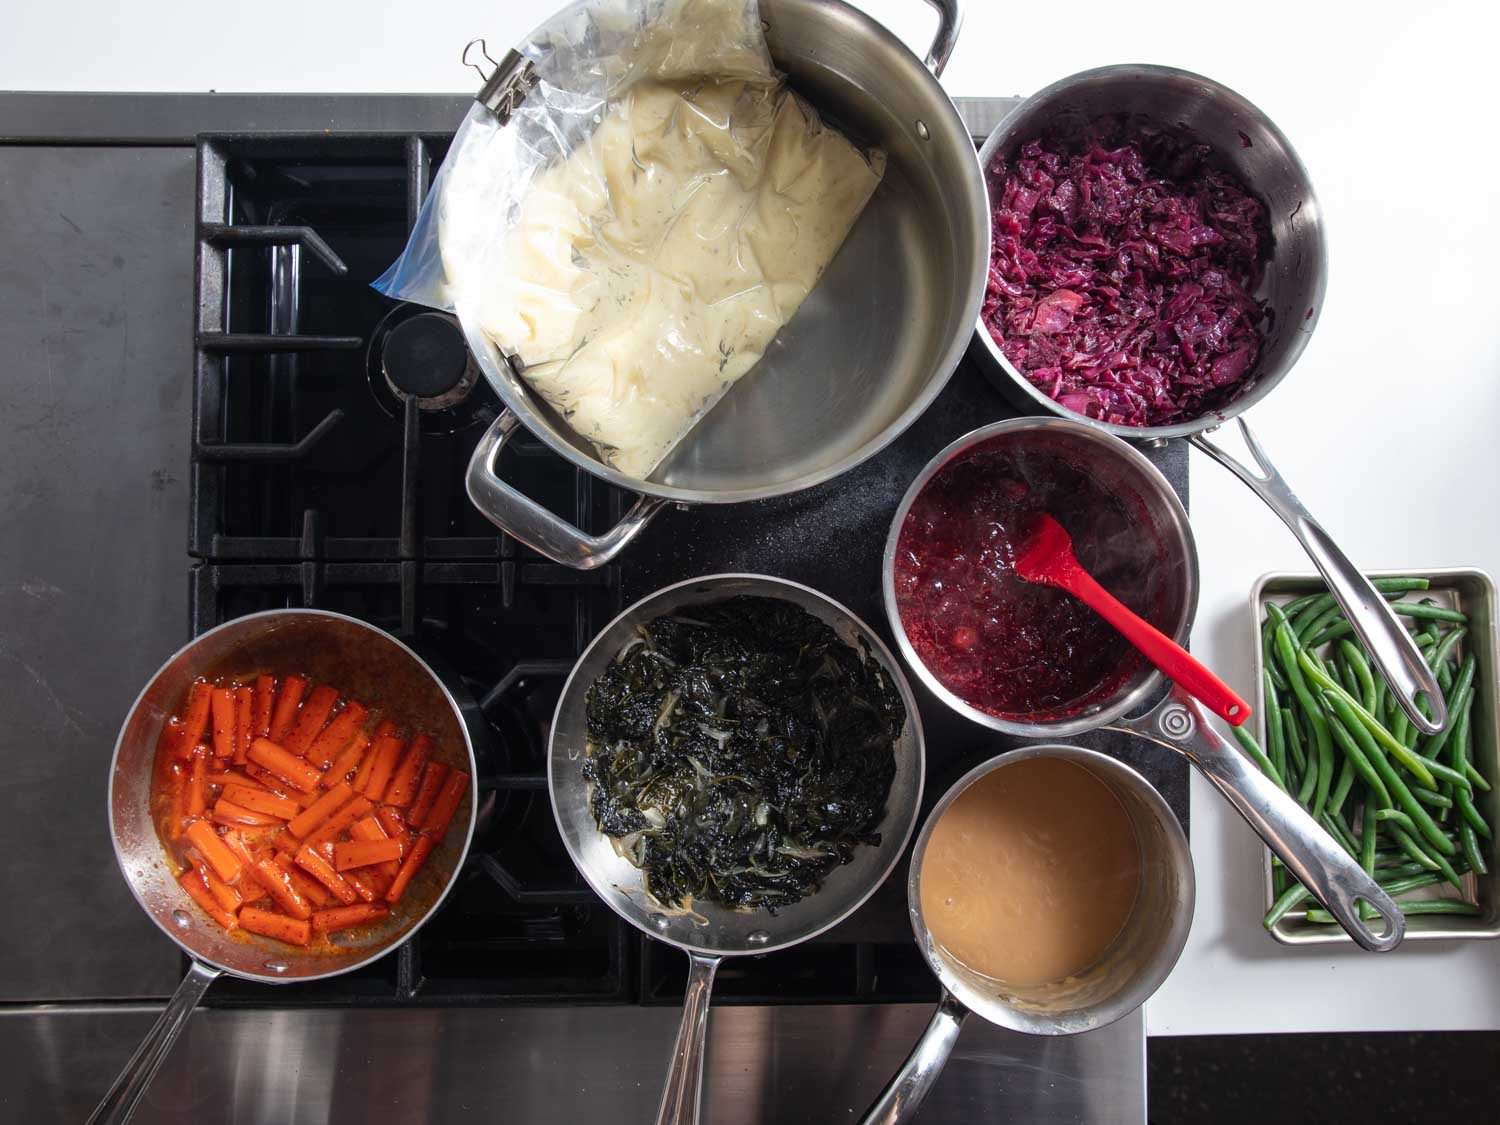 开销的一系列烘焙钢铁设置站变暖锅,平底锅的土豆泥、肉汁、蔓越莓酱,炖甘蓝、红球甘蓝,釉面胡萝卜。